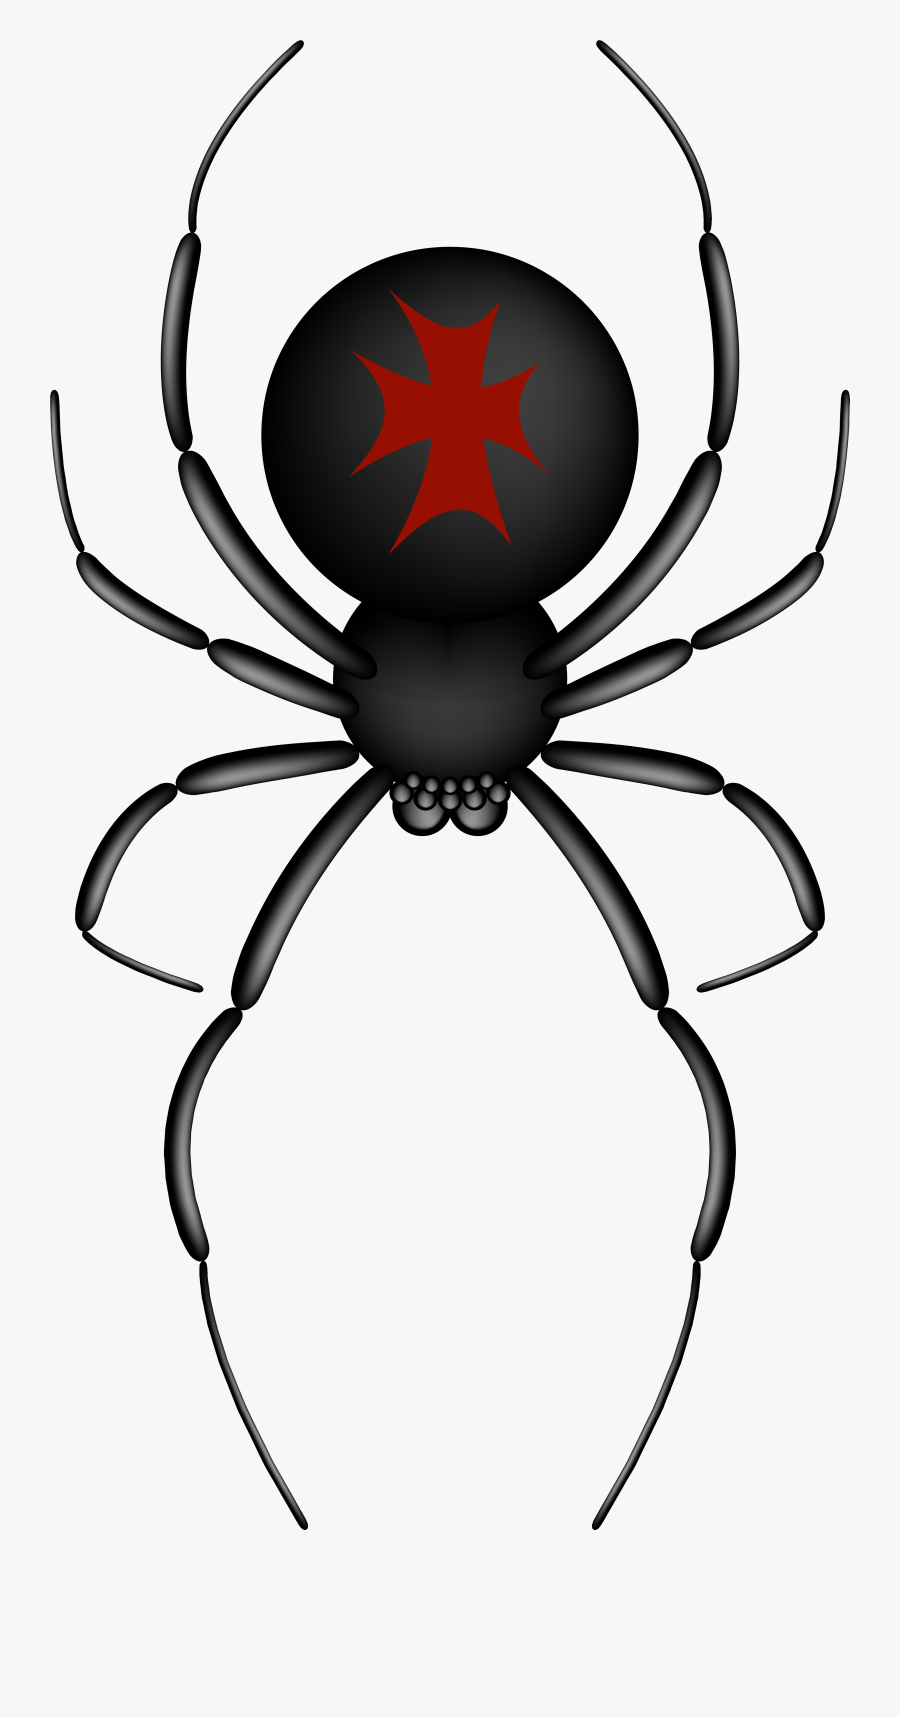 Crusader Spider Transparent Png Clip Art Image - Cartoon Spider Transparent Background, Transparent Clipart